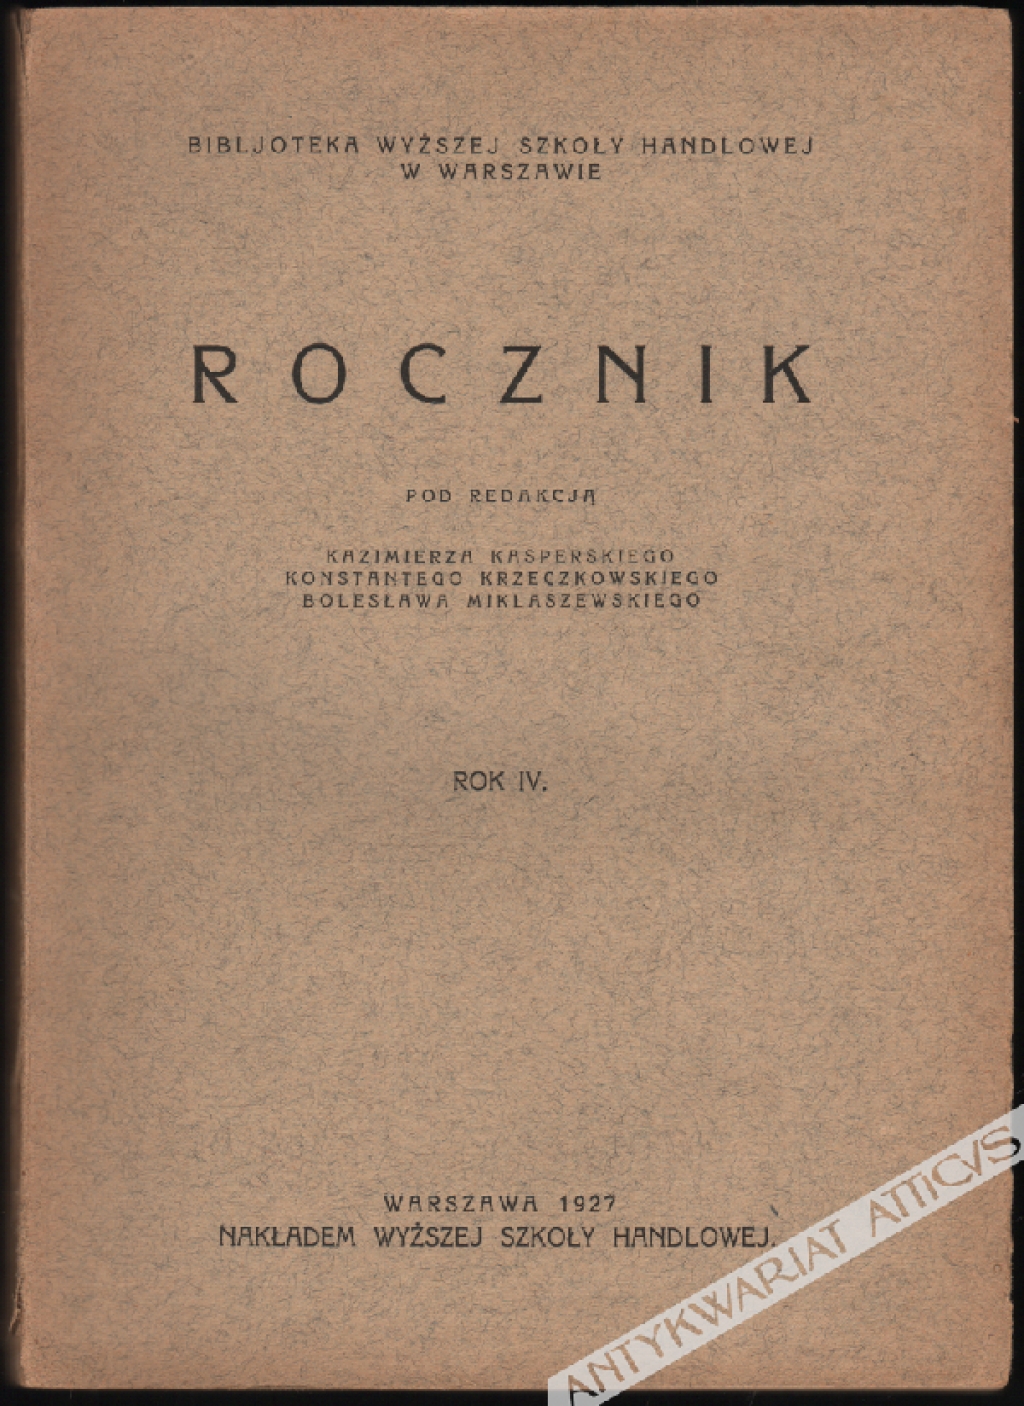 Rocznik (Bibjoteka Wyższej Szkoły Handlowej), Rok IV